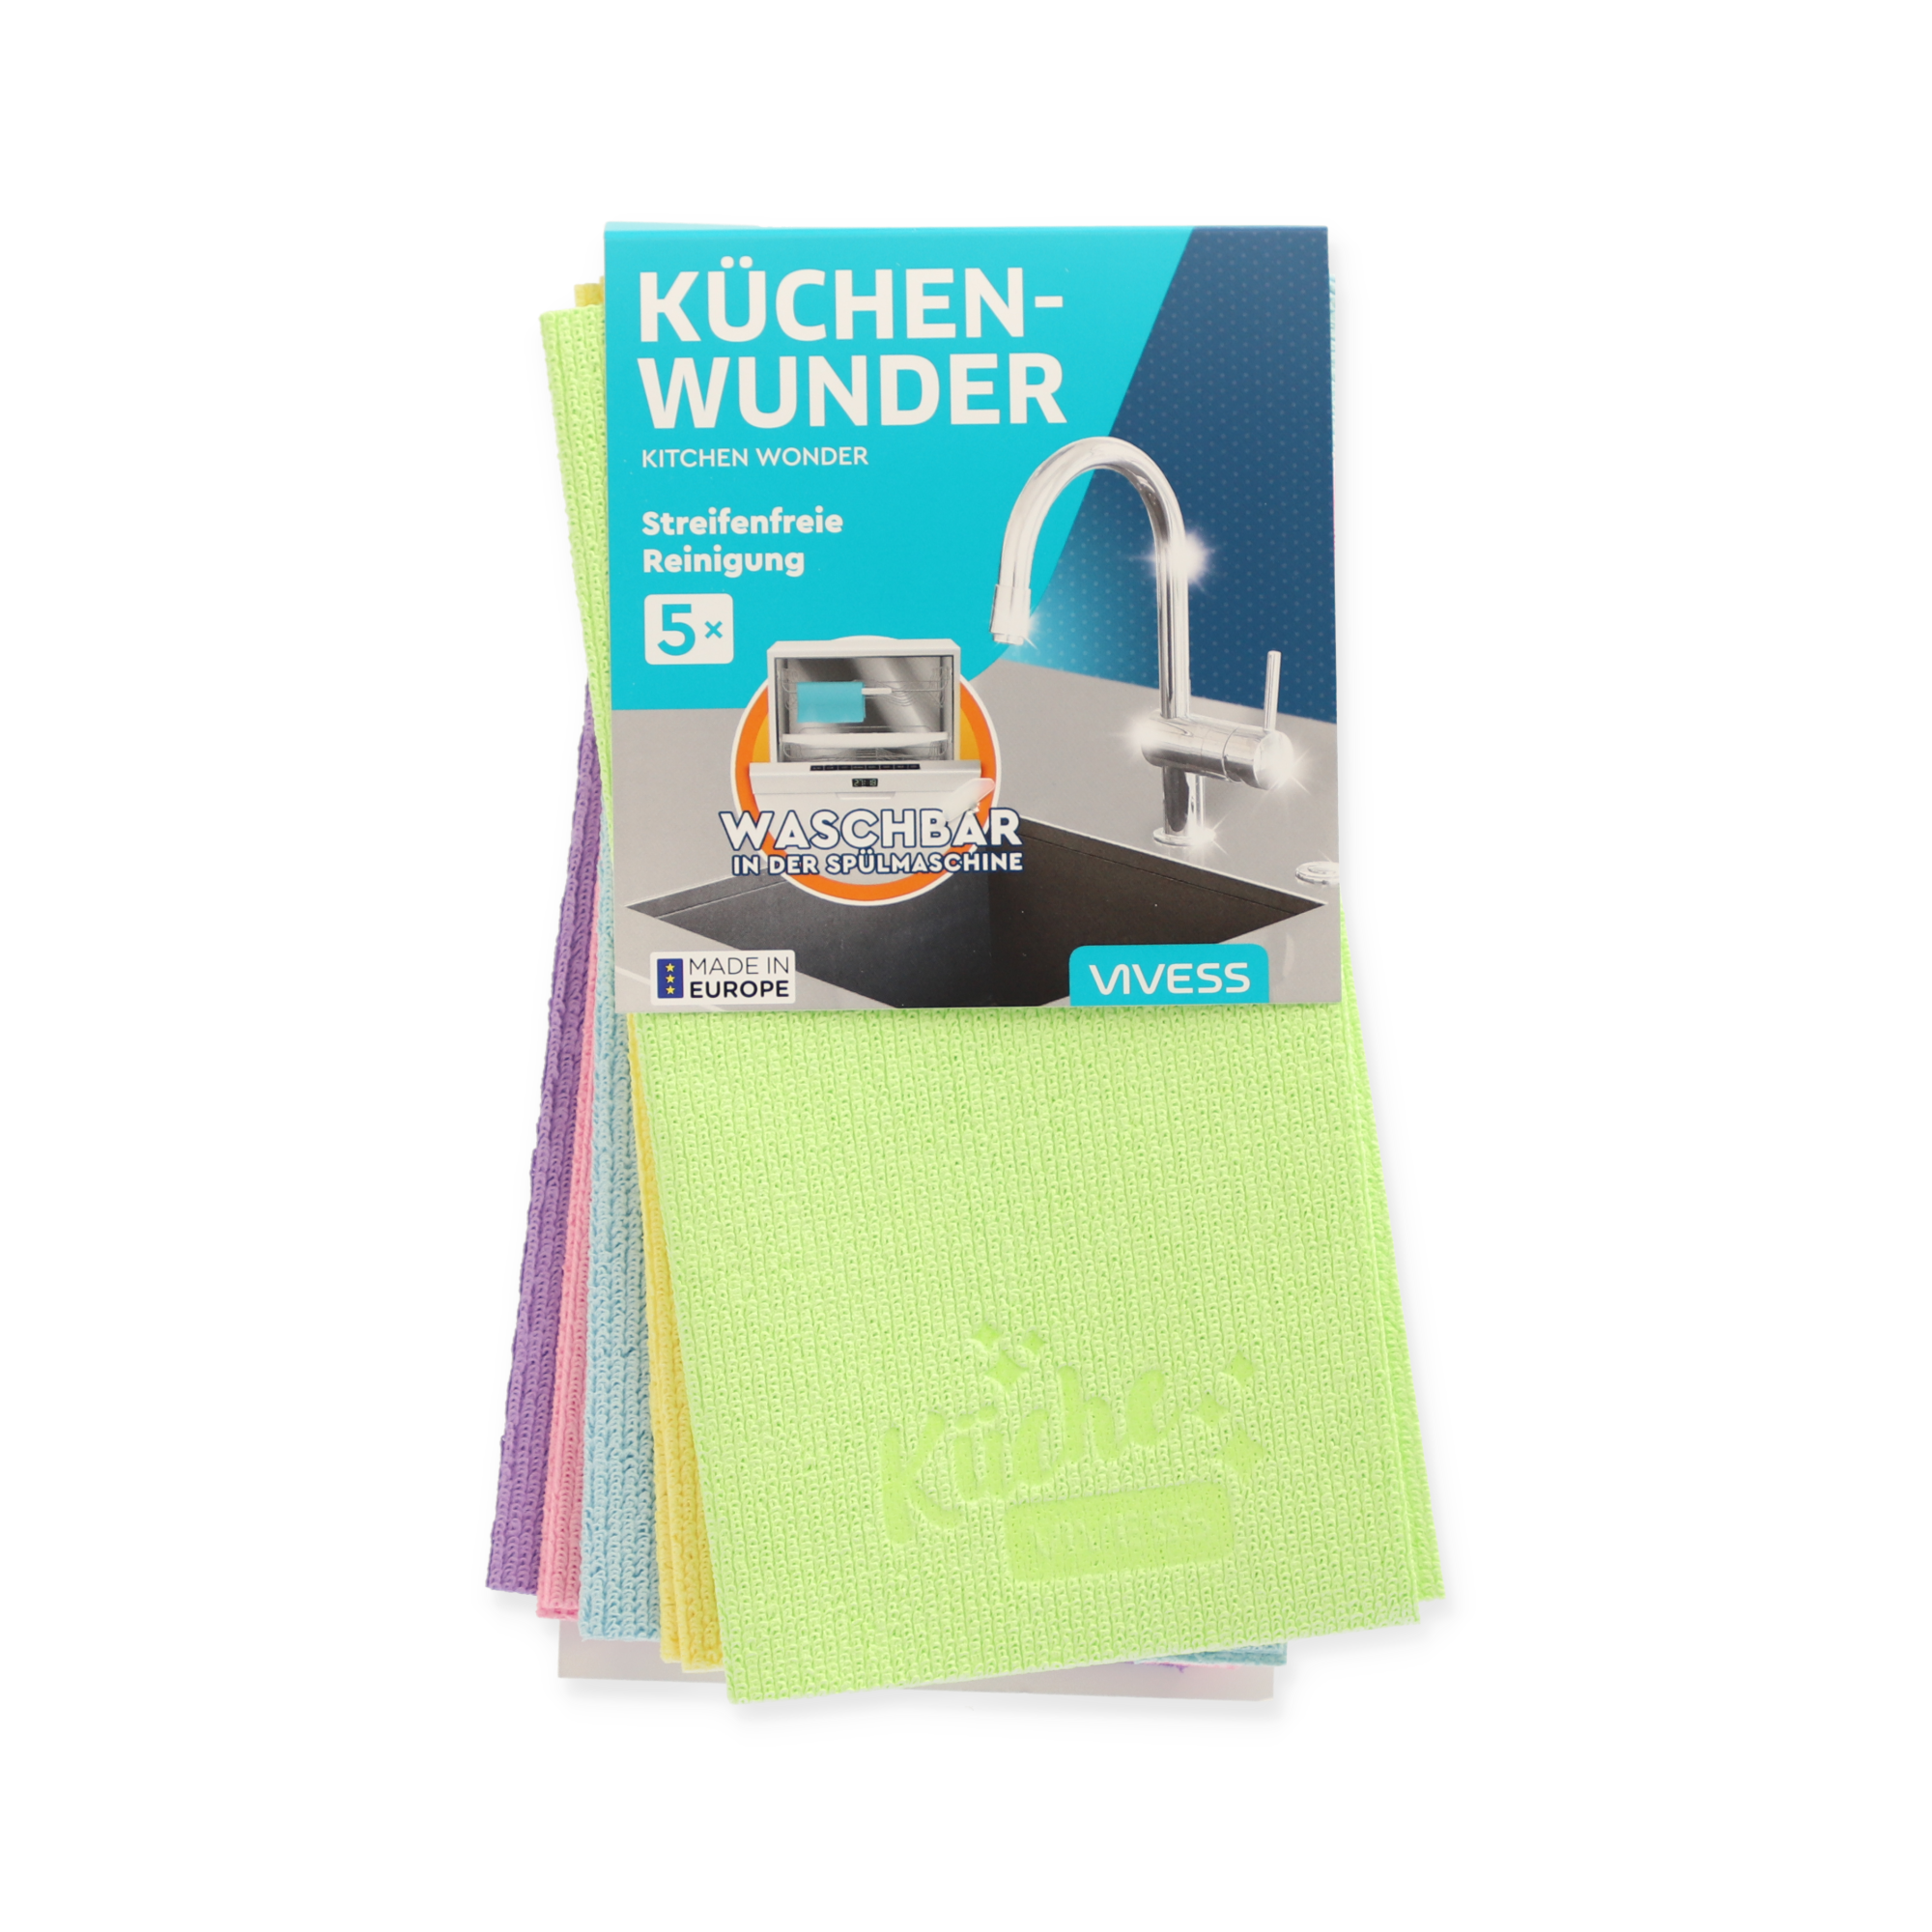 Reinigungstücher 'Küchenwunder' bunt 21,5 x 21,5cm 5 Stück + product picture